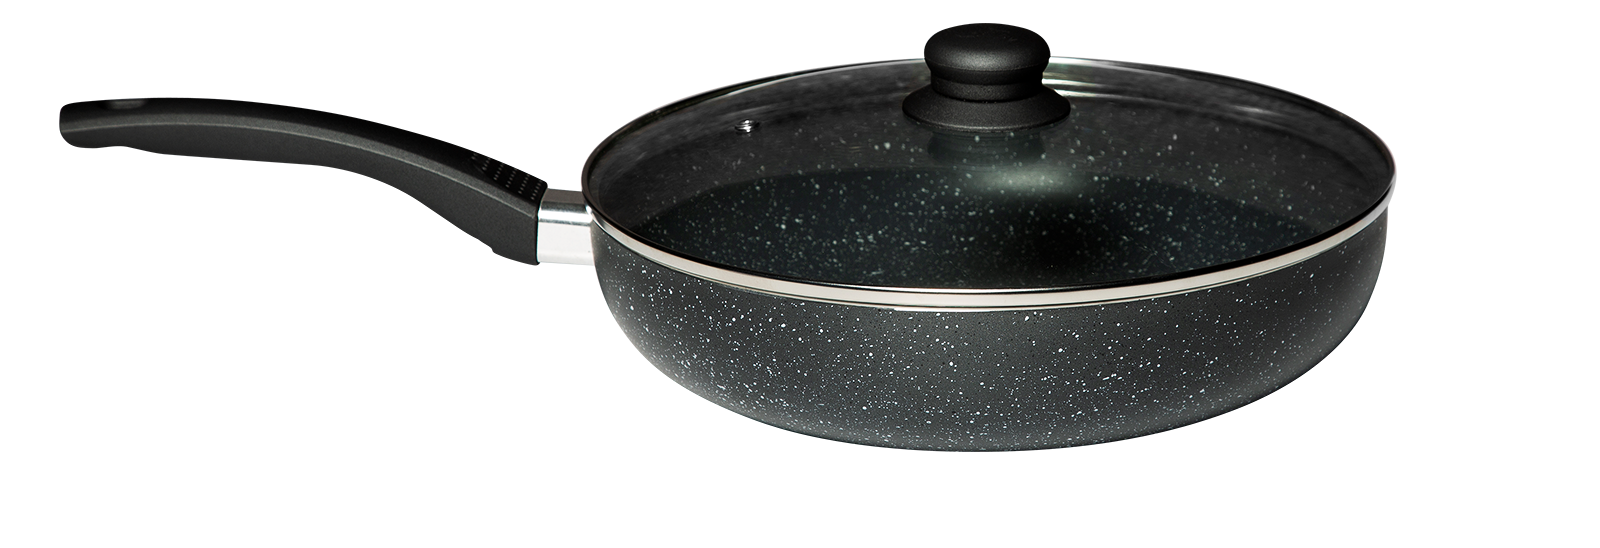 Poêle wok en aluminium avec couvercle en verre 20 cm Elo Smart